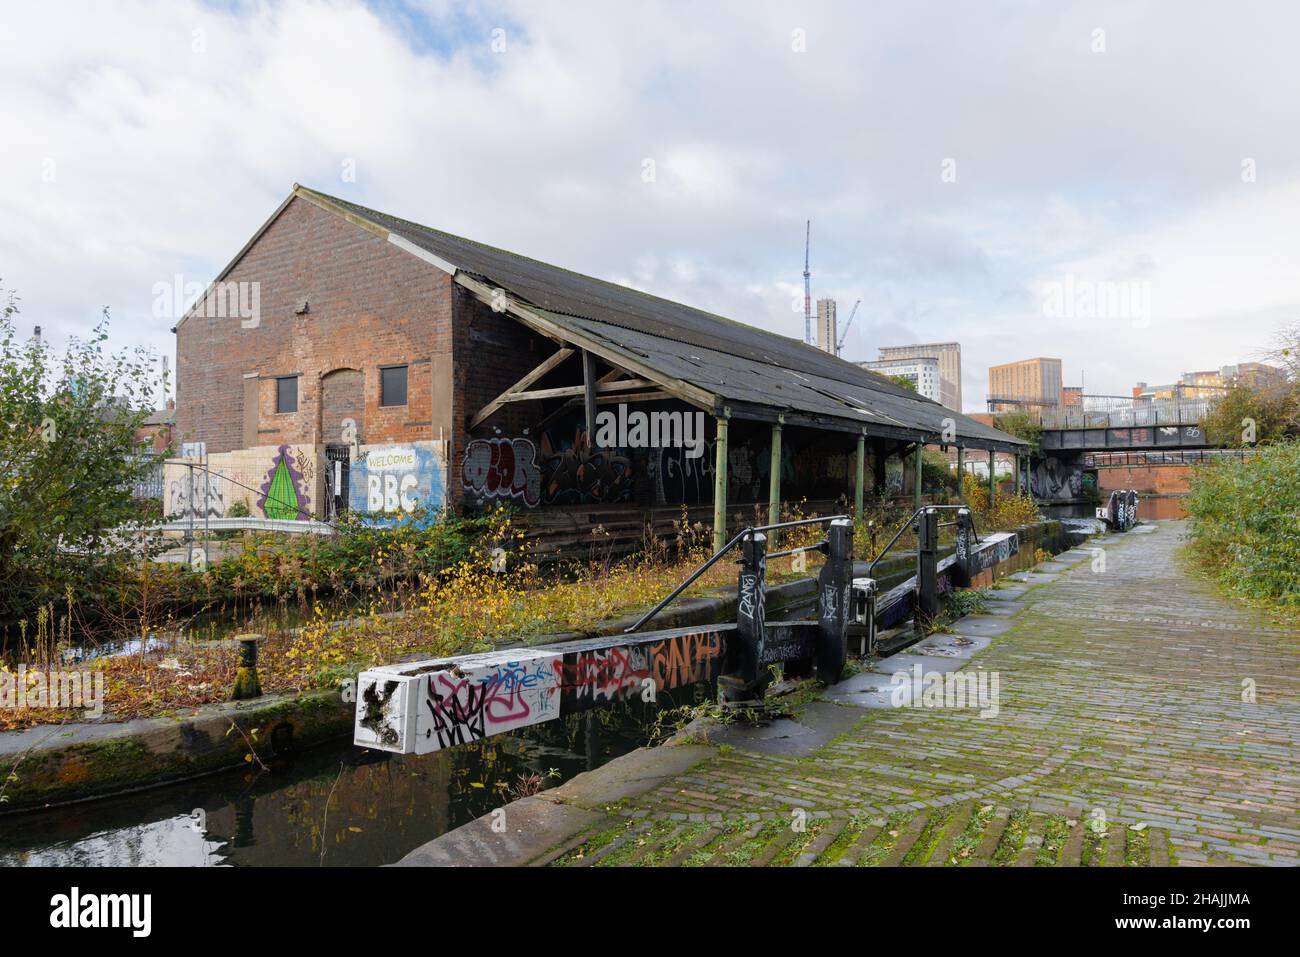 Birmingham West Midlands, Royaume-Uni, décembre 1st 2021 : un entrepôt abandonné est situé à proximité de portes d'écluse désaffectée sur le canal de Grand Union, près de Digbeth Junction. Banque D'Images